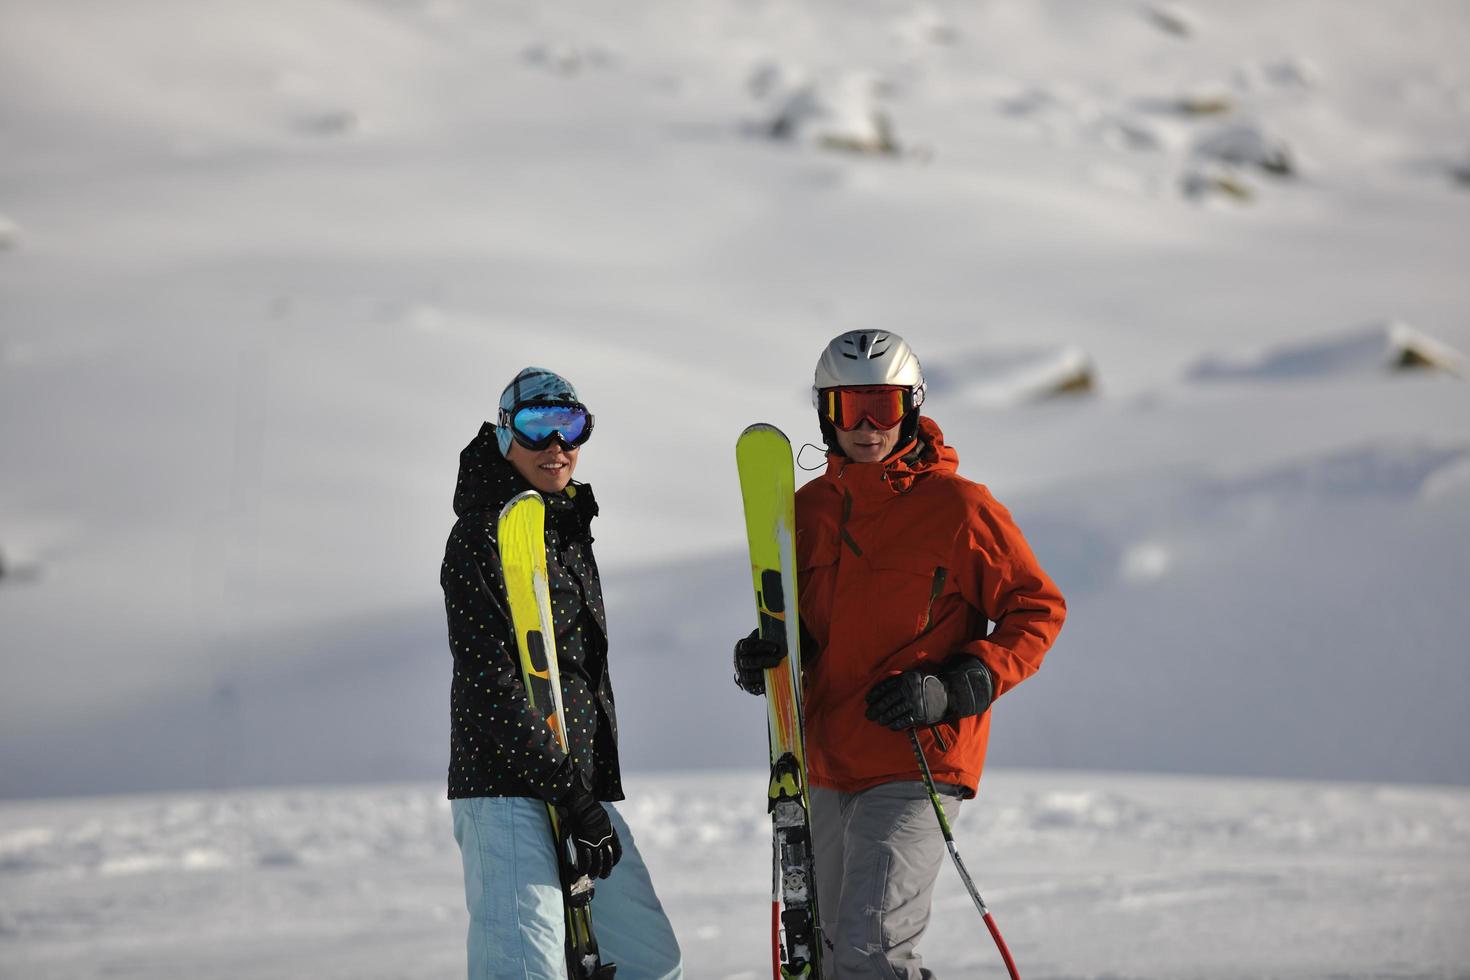 skier maintenant pendant la saison d'hiver photo